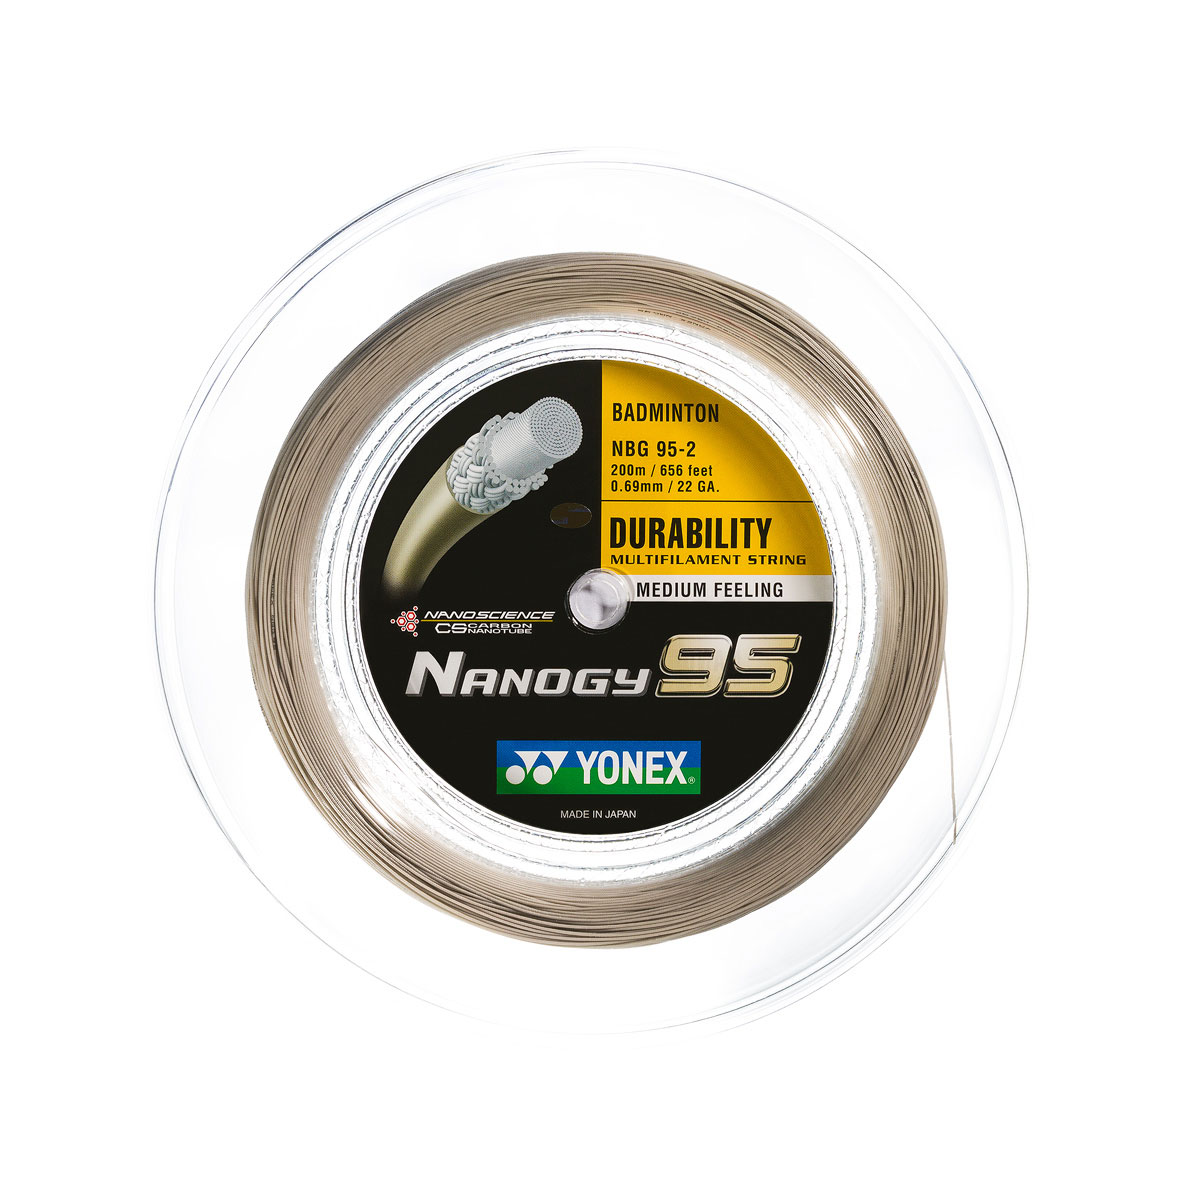 YONEX NANOGY 95 - Silver Gray - 200m